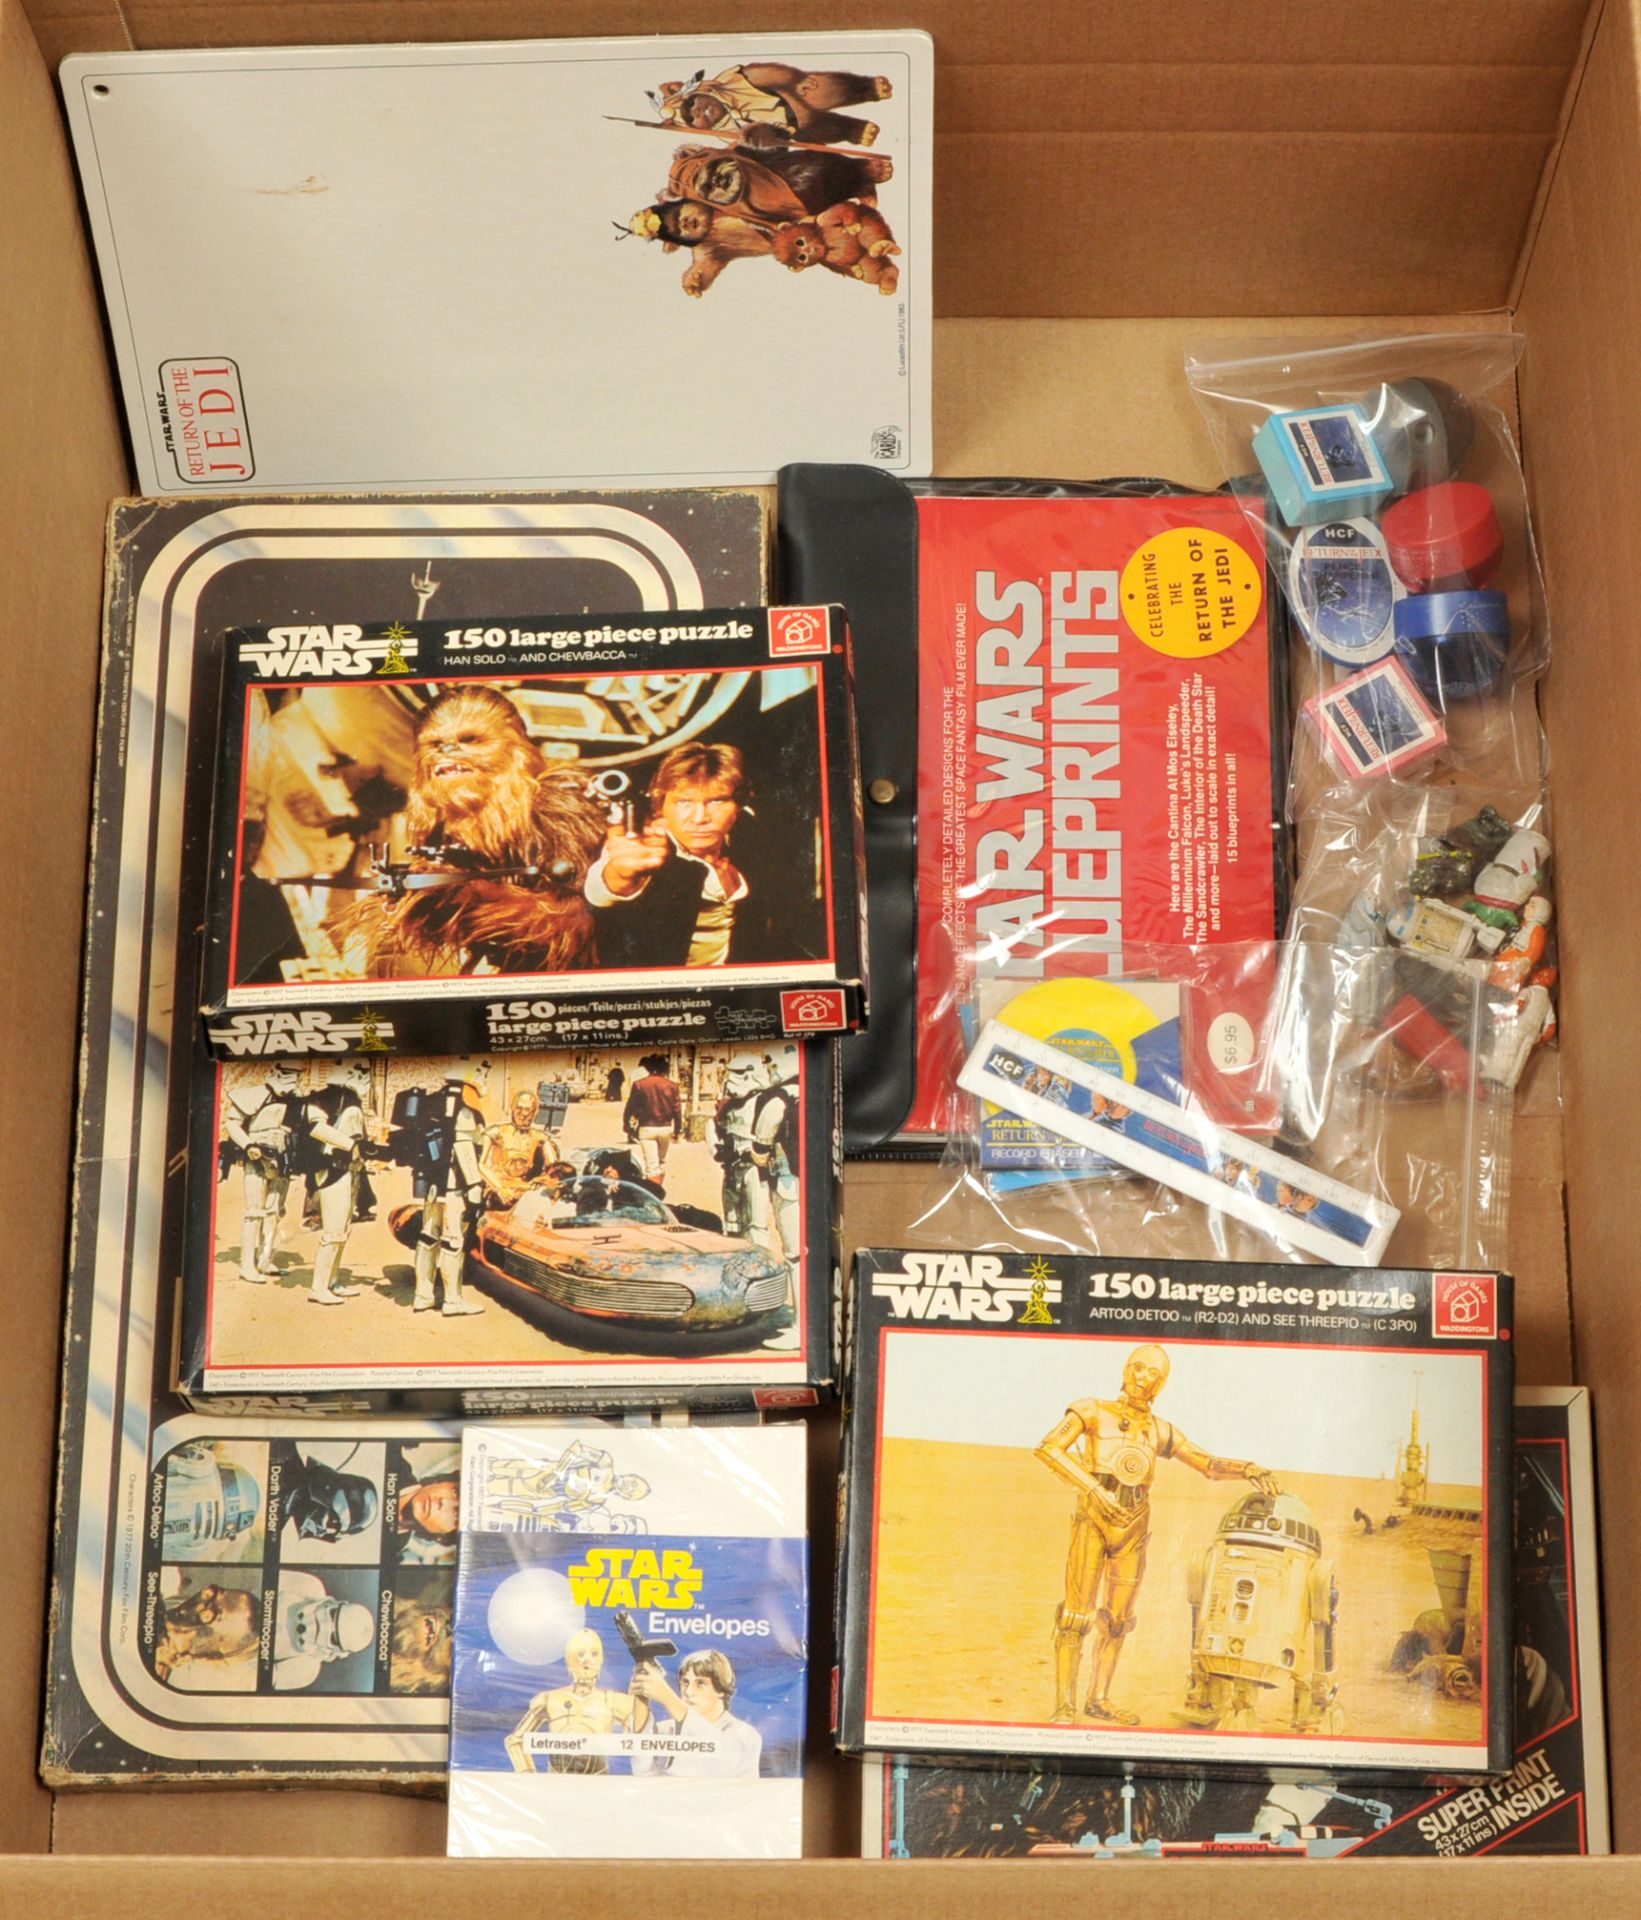 Star Wars vintage HCF stationery and ephemera